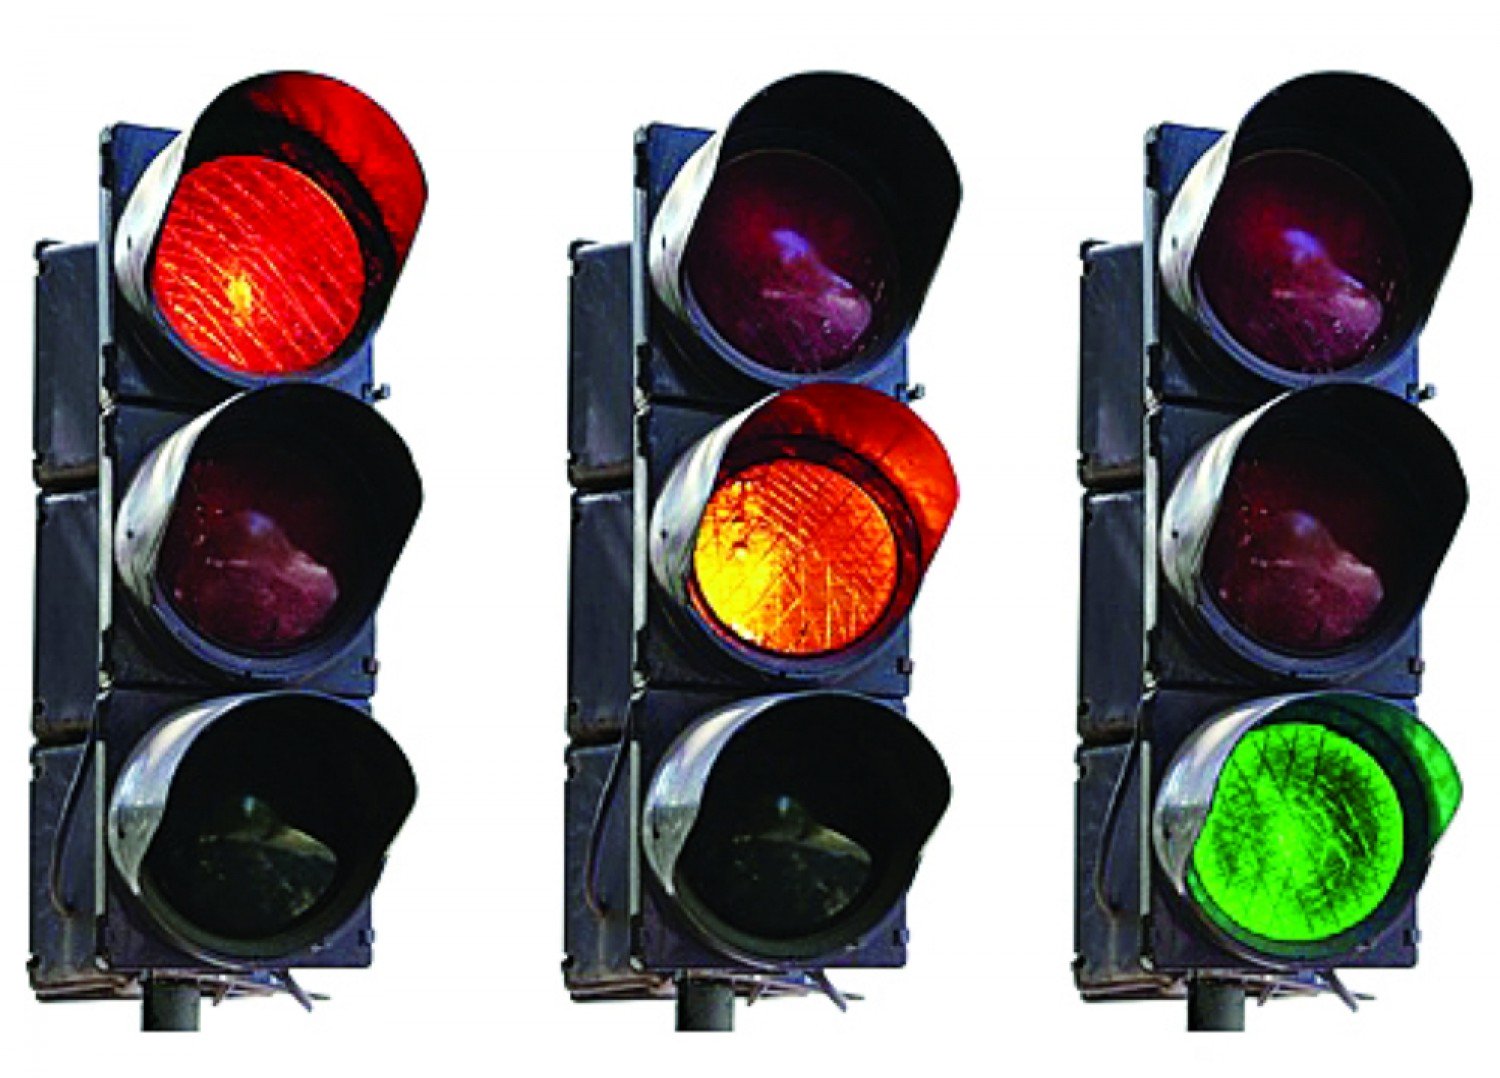 ابتكار طريقة تجعل الاستغناء عن الإشارات المرورية ممكناً وتقلل الحوادث